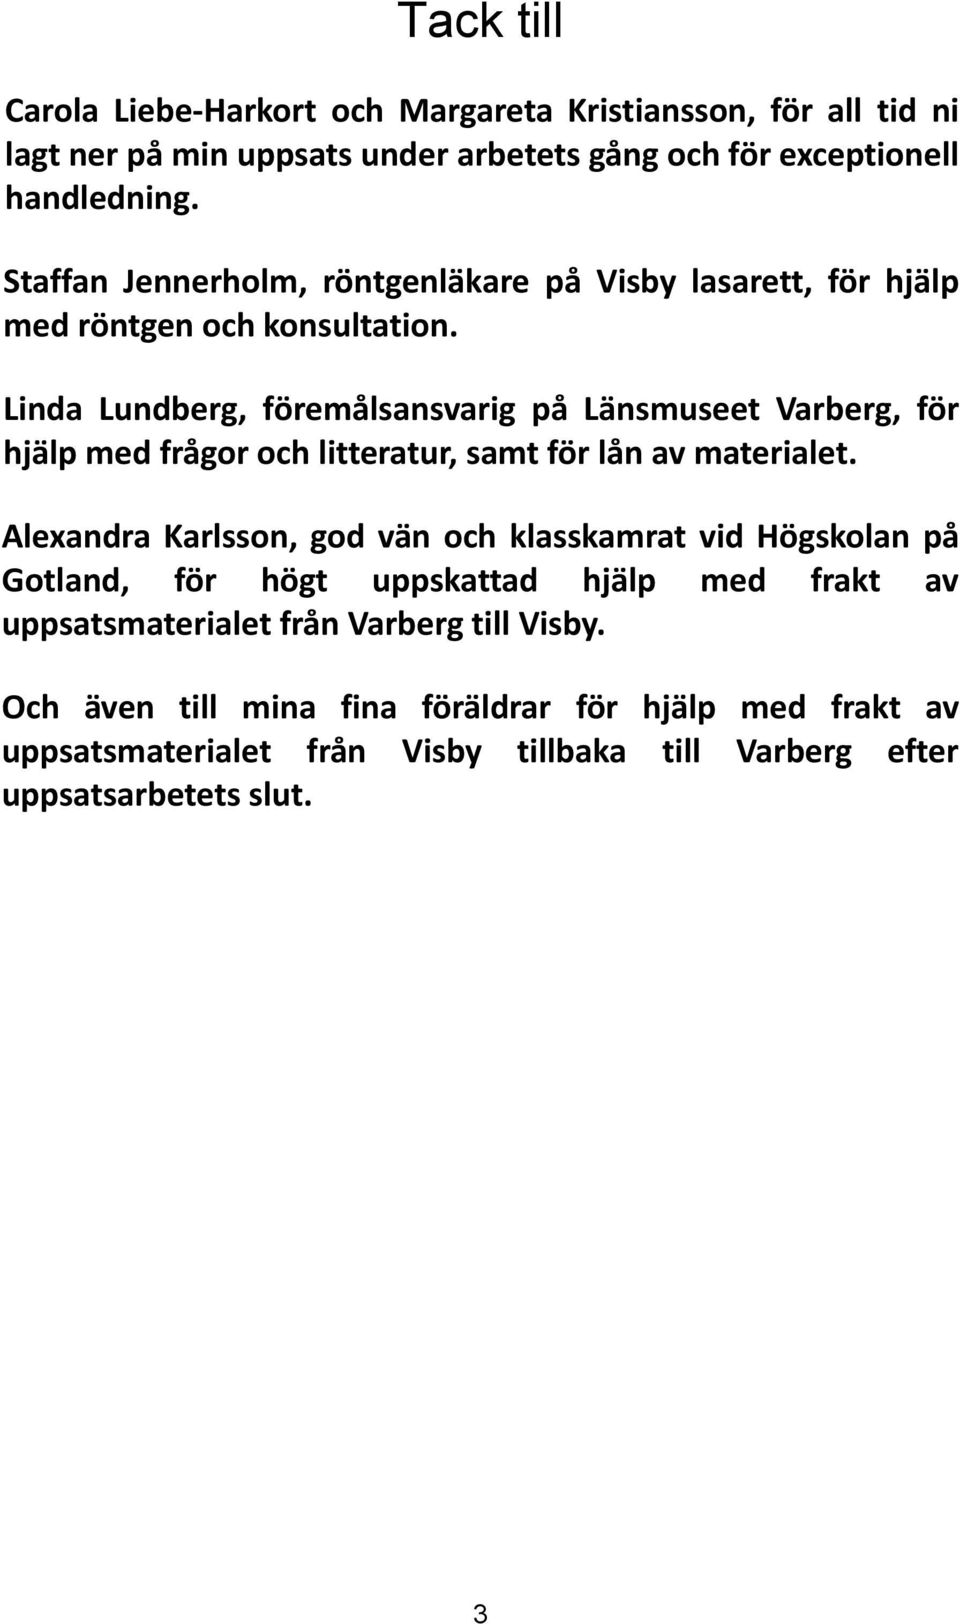 Linda Lundberg, föremålsansvarig på Länsmuseet Varberg, för hjälp med frågor och litteratur, samt för lån av materialet.